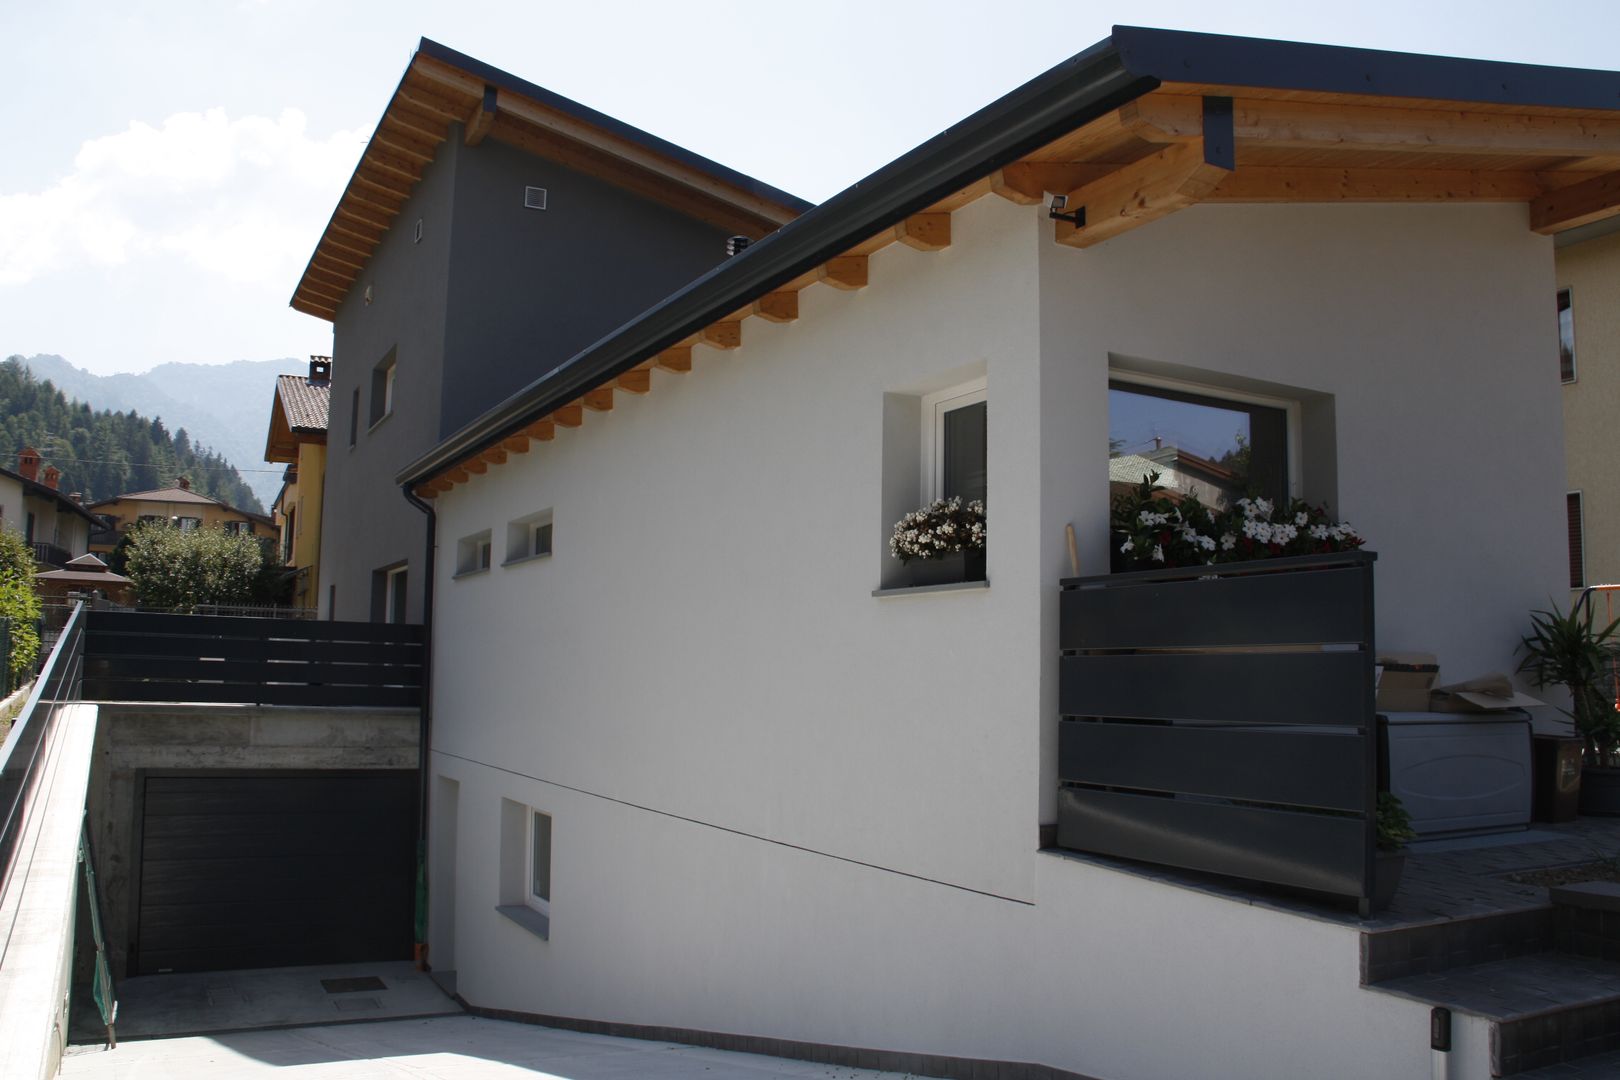 Casa in legno - provincia di Bergamo, BENDOTTI ZAMBONI Tecnici Associati BENDOTTI ZAMBONI Tecnici Associati Modern houses